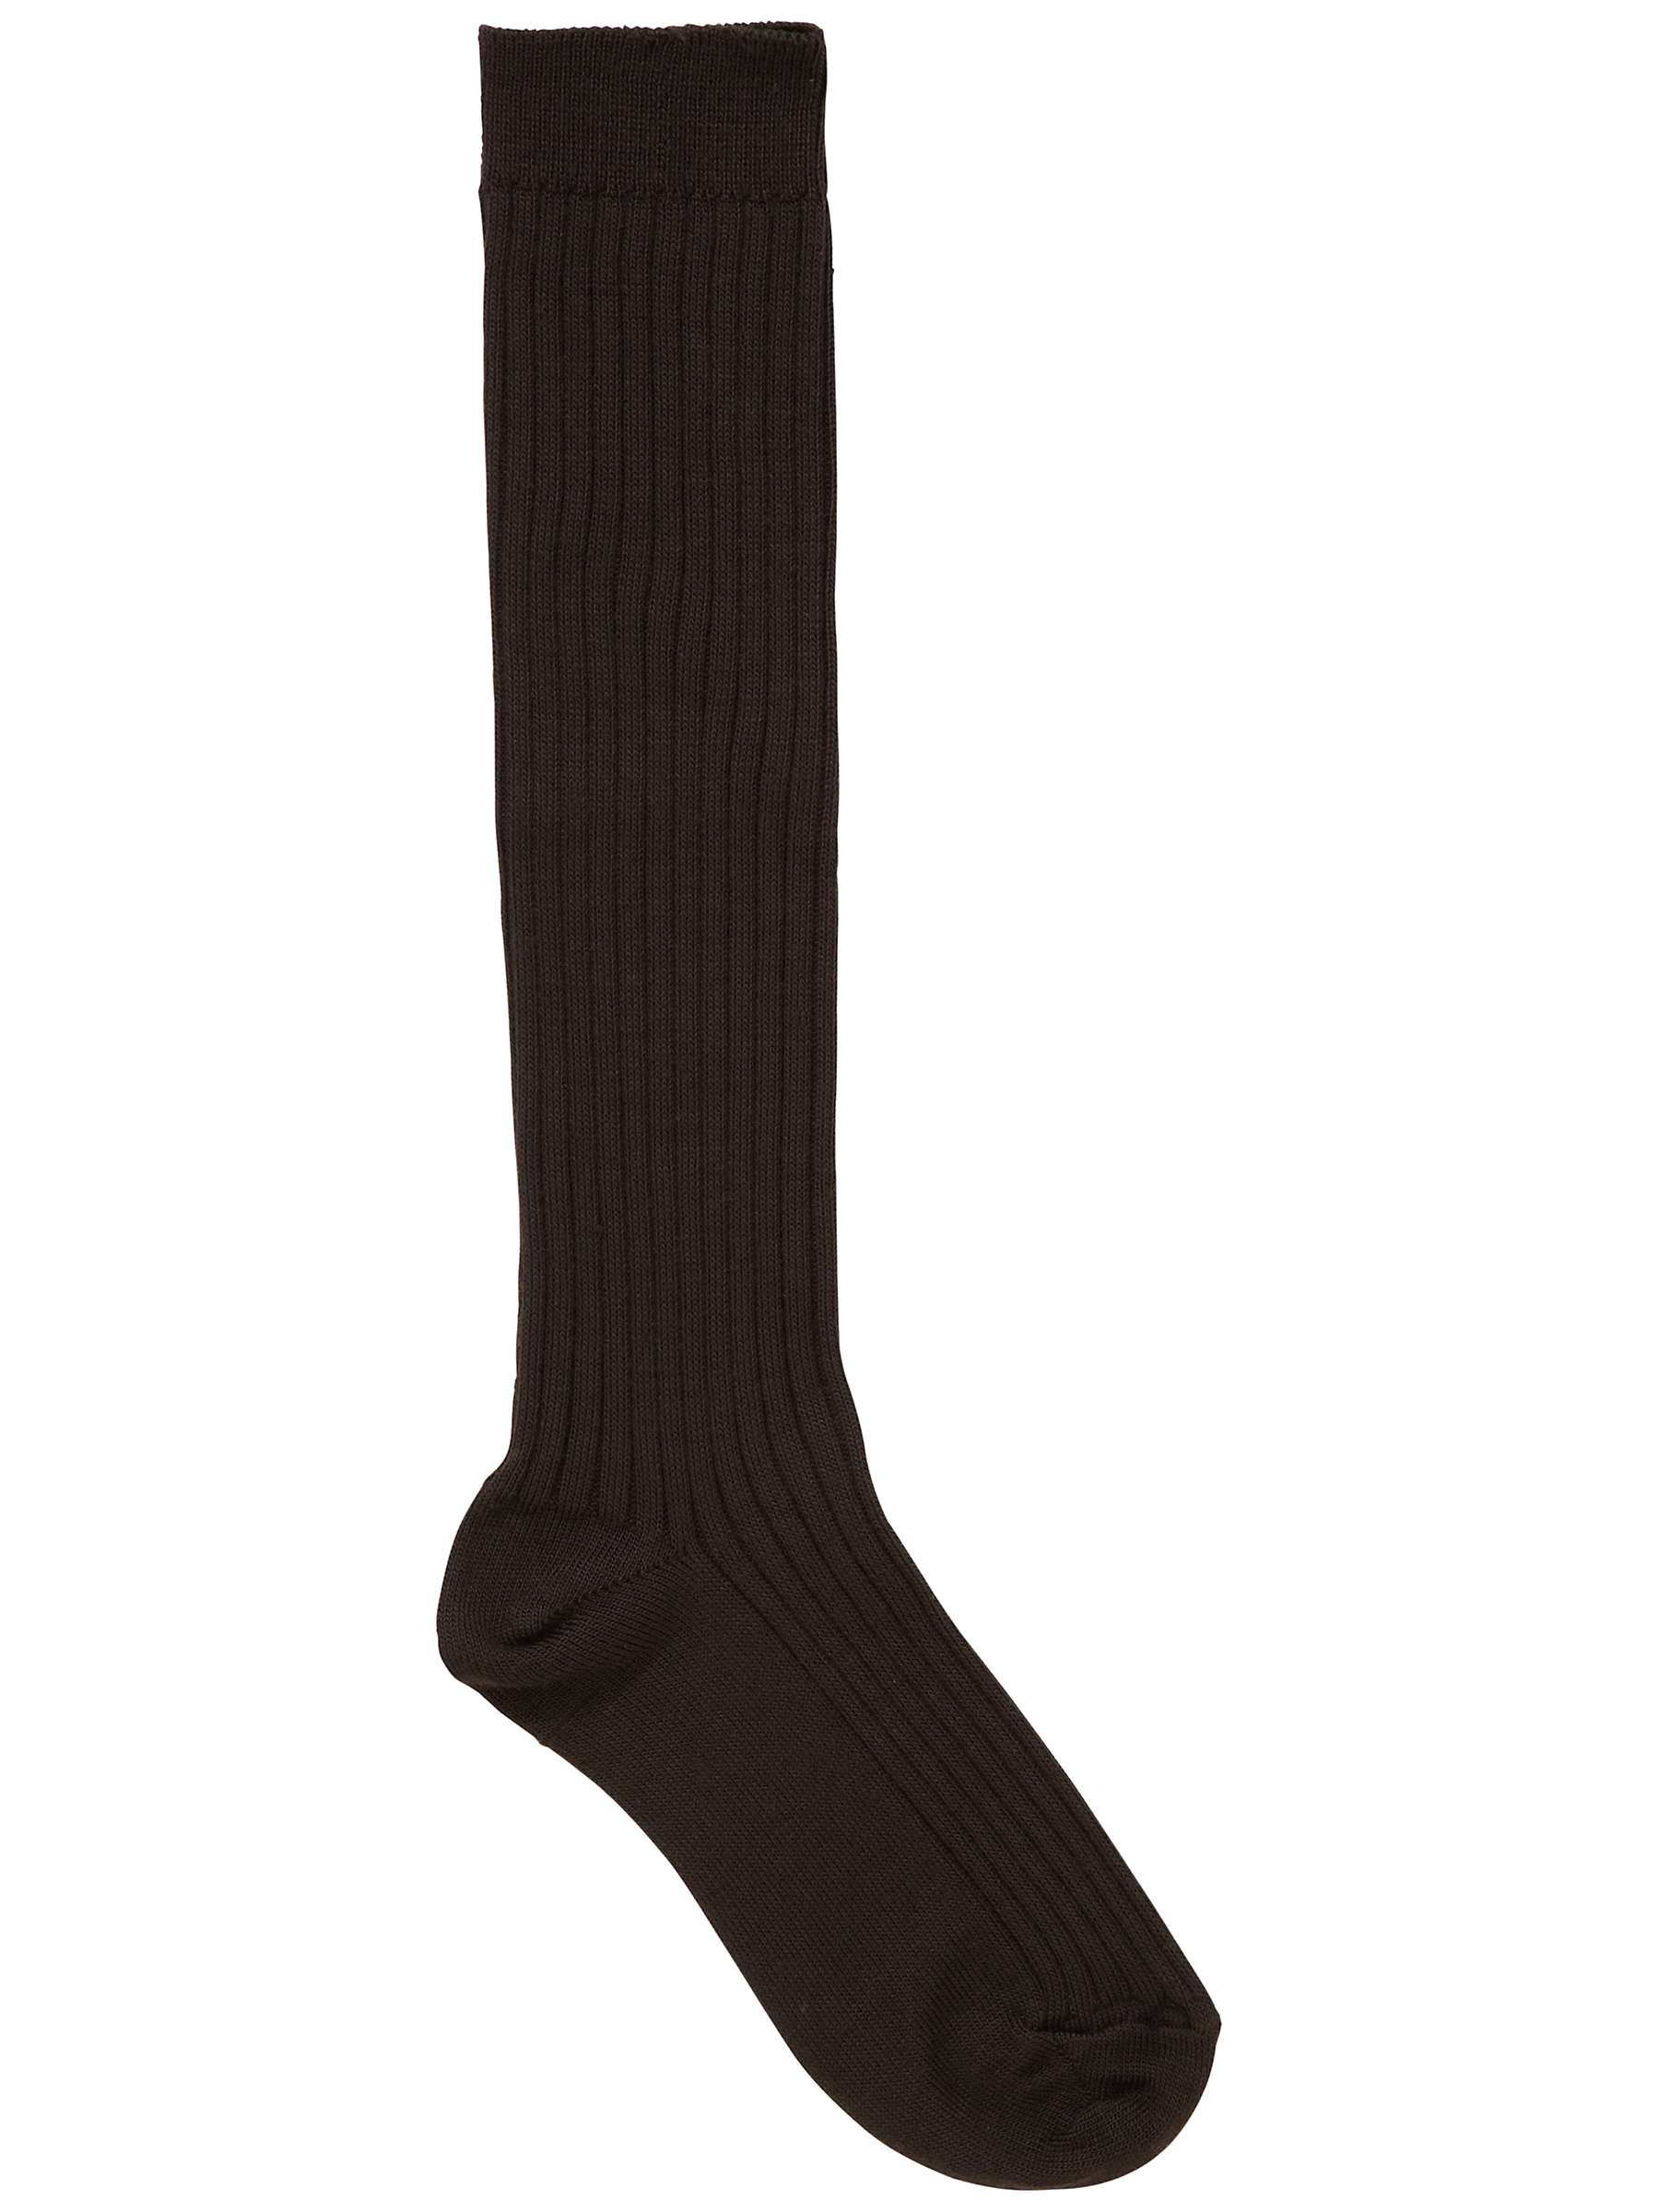 Buy Girls' School Knee High Socks, Pack of 2, Brown Online at johnlewis.com